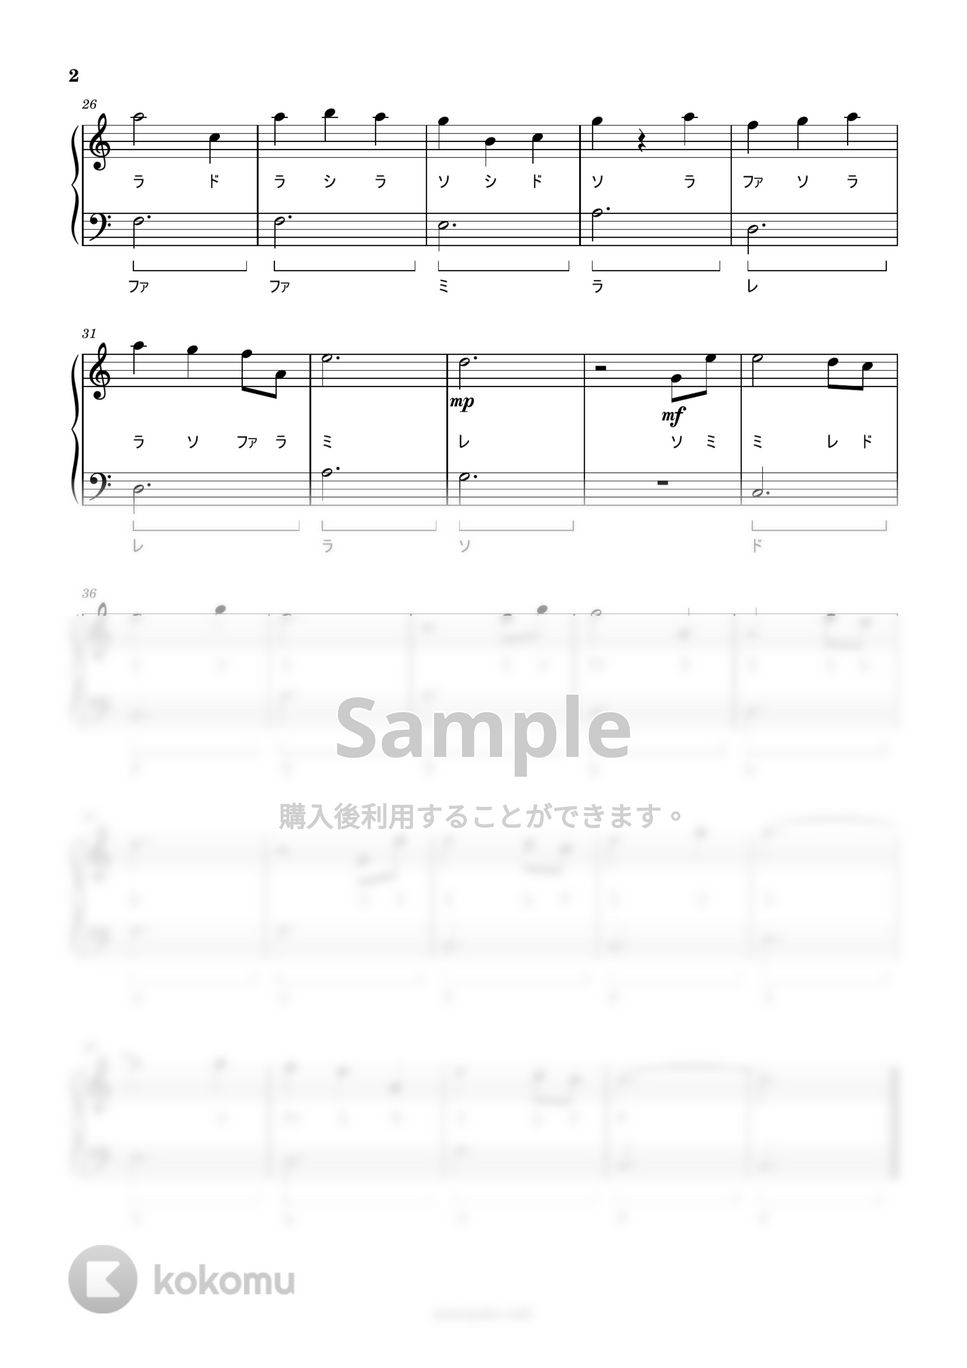 倍賞千恵子 - 世界の約束 (ドレミ付き簡単楽譜) by ピアノ塾